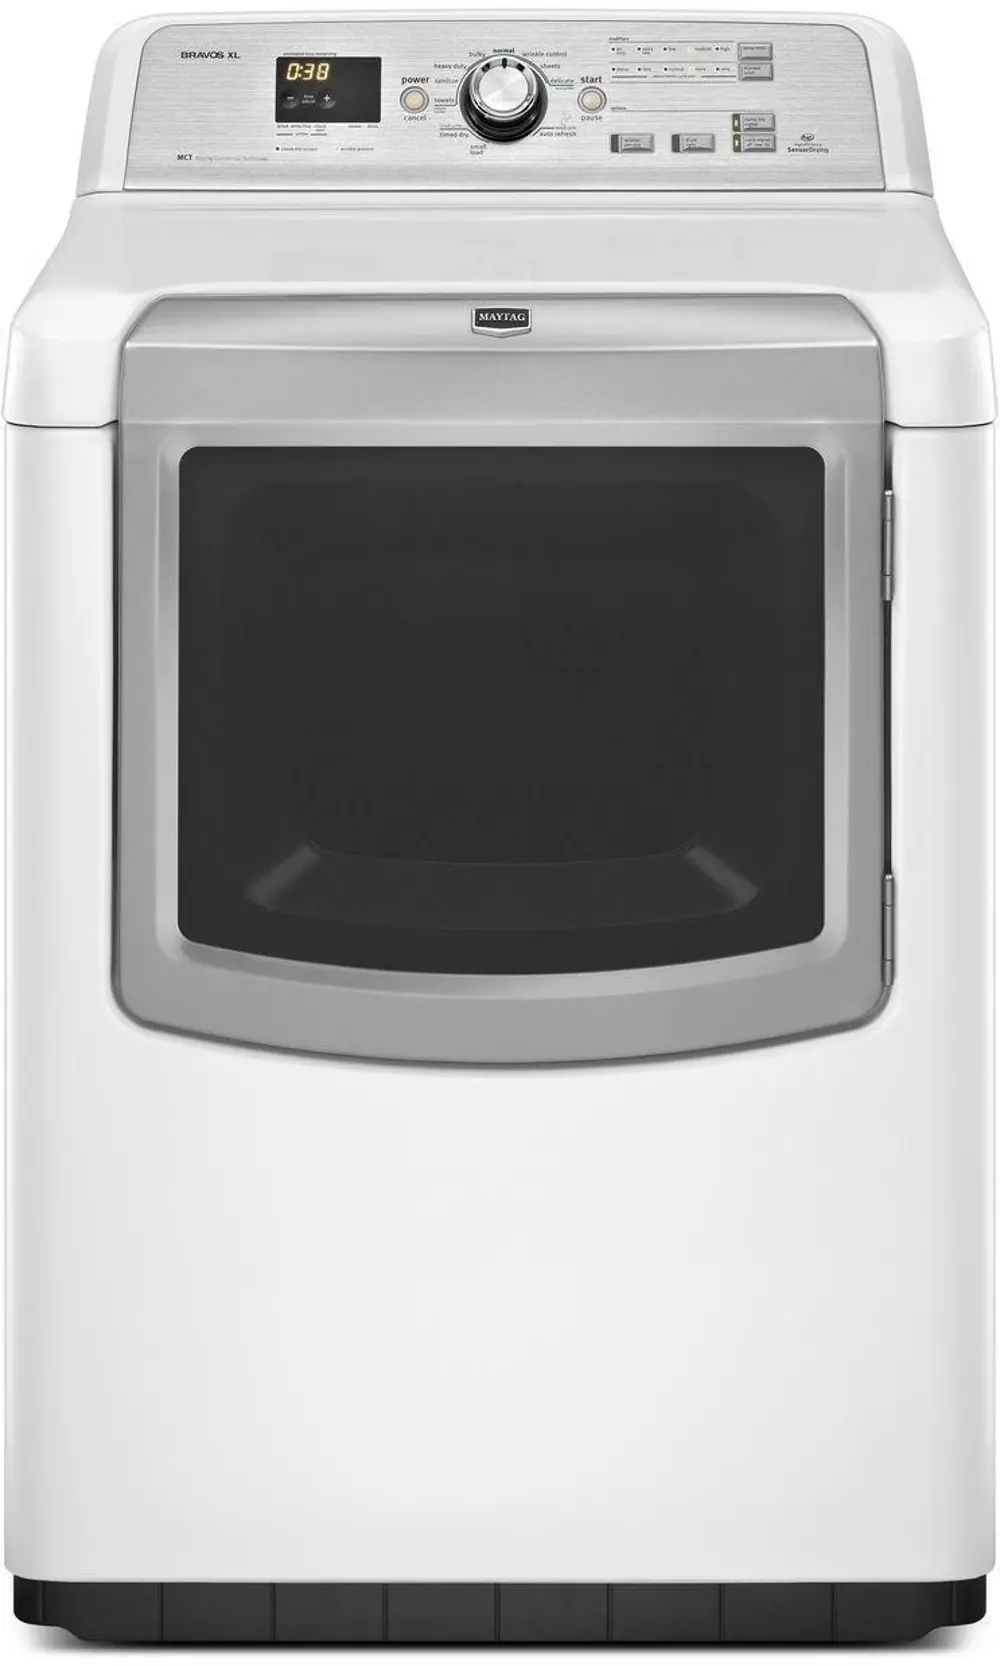 MEDB880BW Maytag Electric Dryer-1